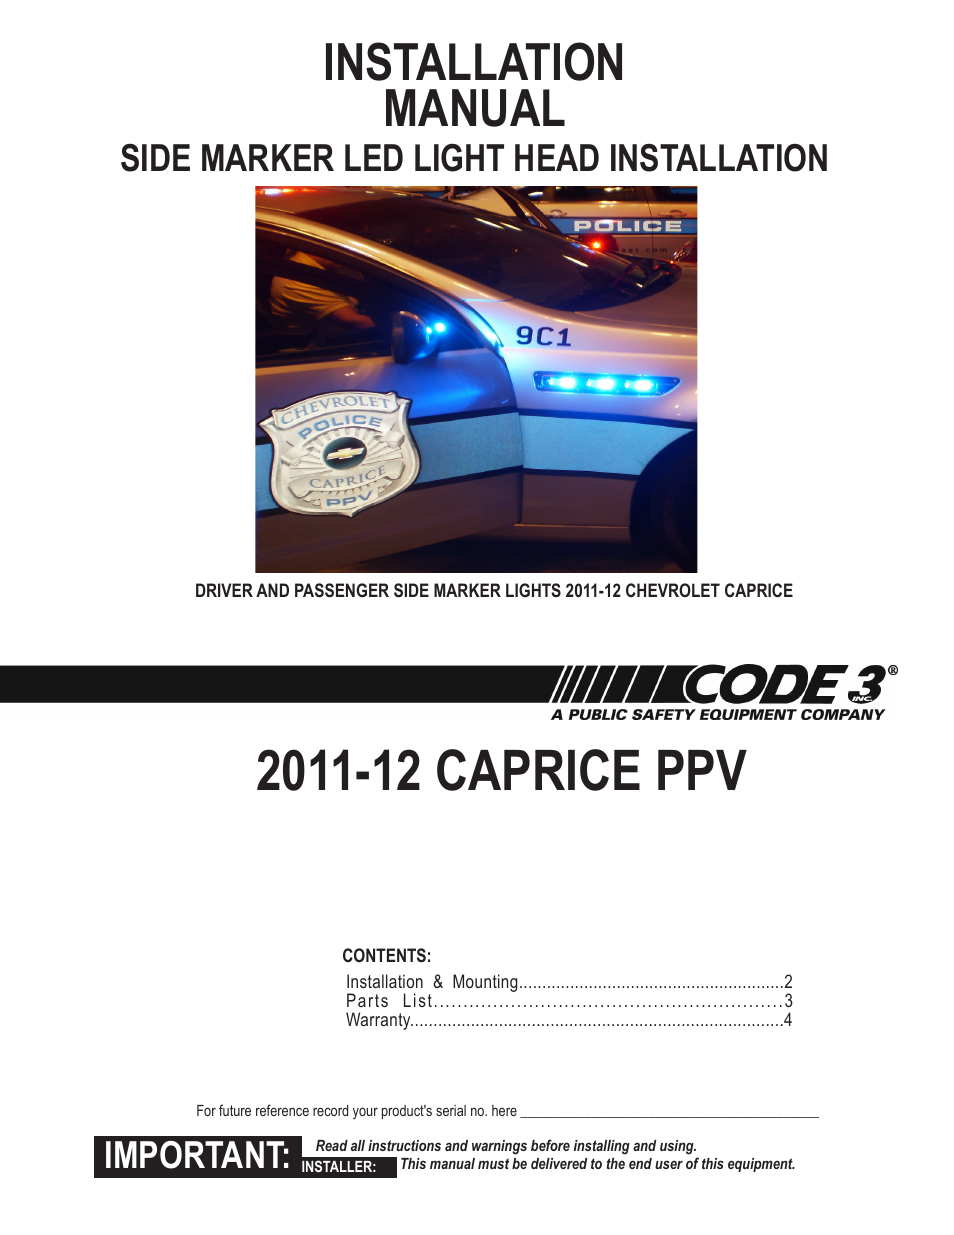 Caprice Side Marker LED light